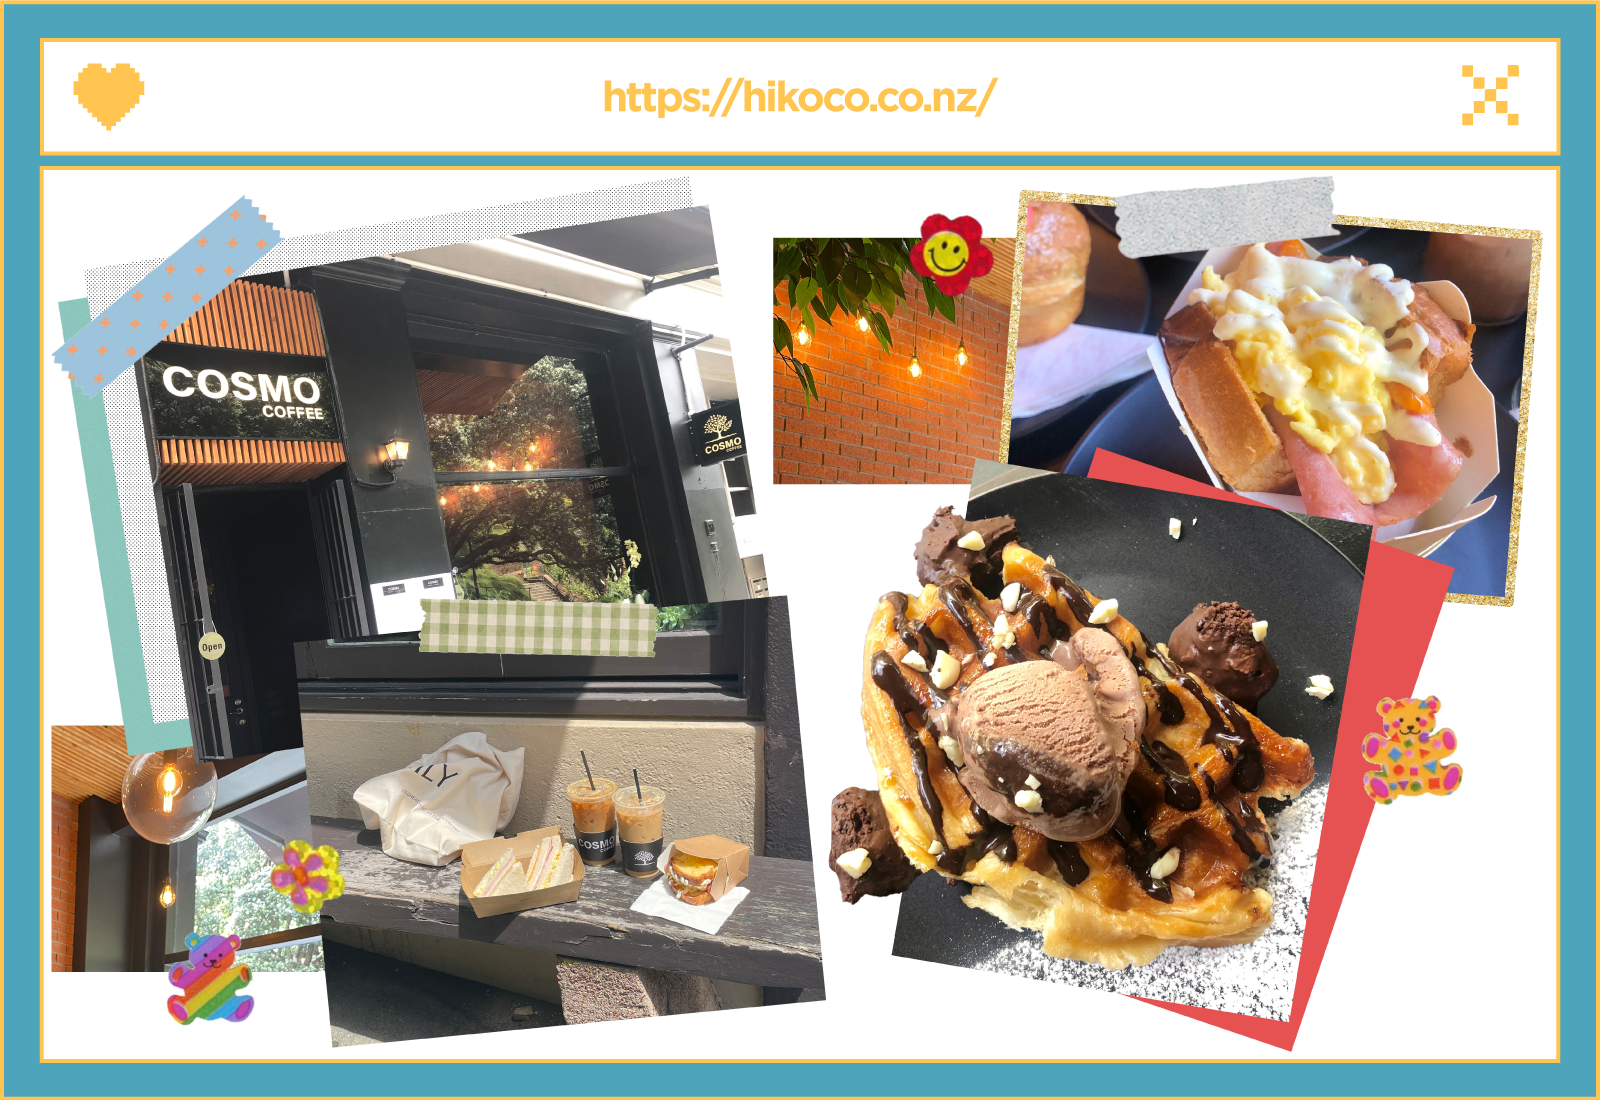 #AucklandEats: A Coffee Shop Full of Korea's Trendiest Foods